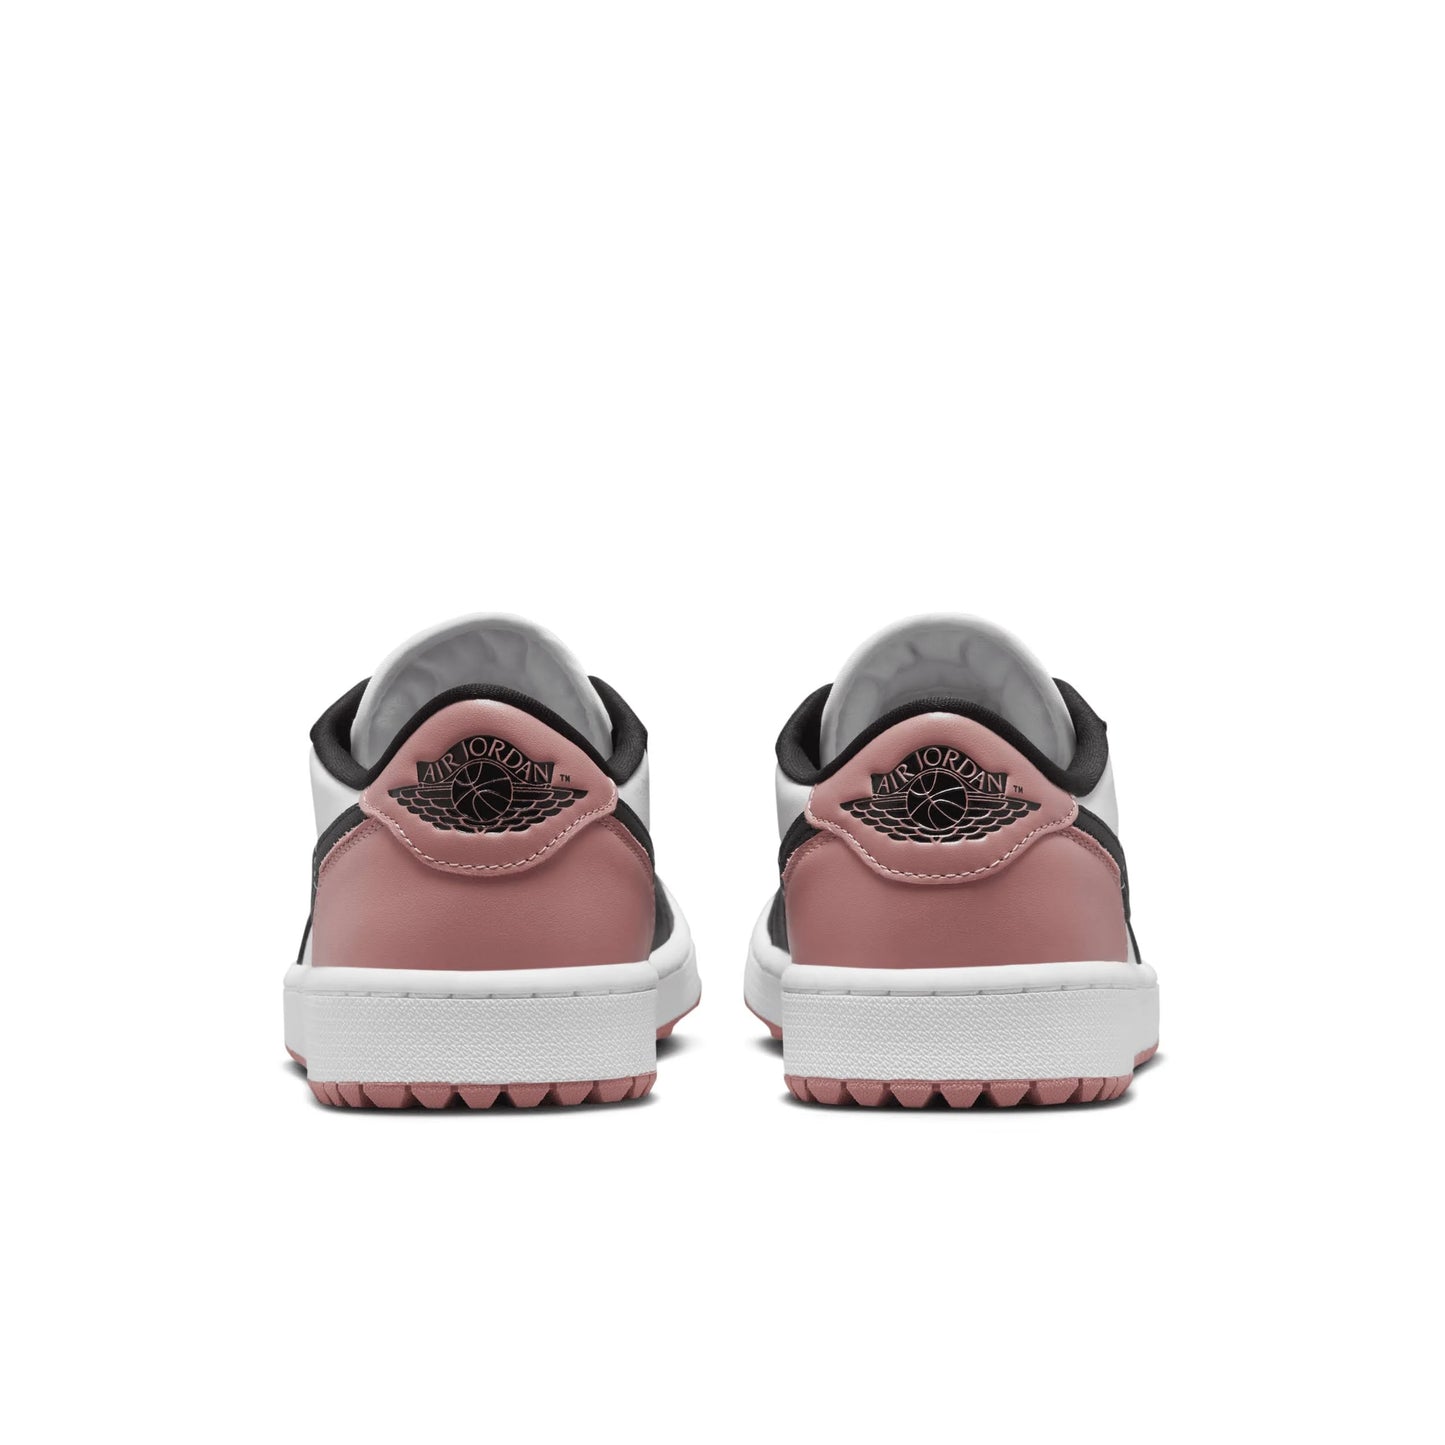 Nike Air Jordan 1 Retro Low Golf Rust Pink